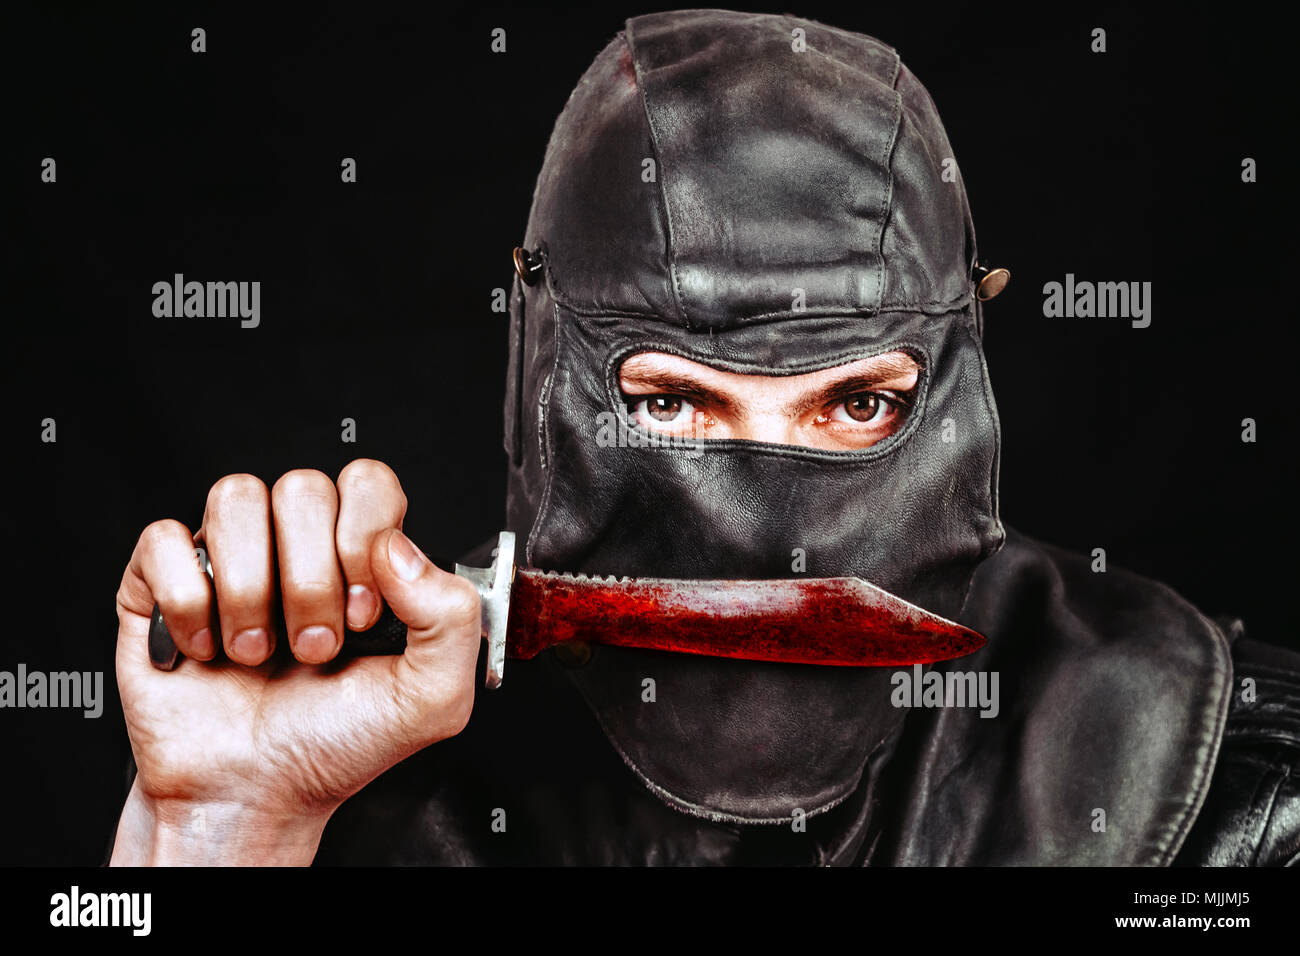 Terrorist in einem Leder Maske mit einem Messer Stockfotografie - Alamy